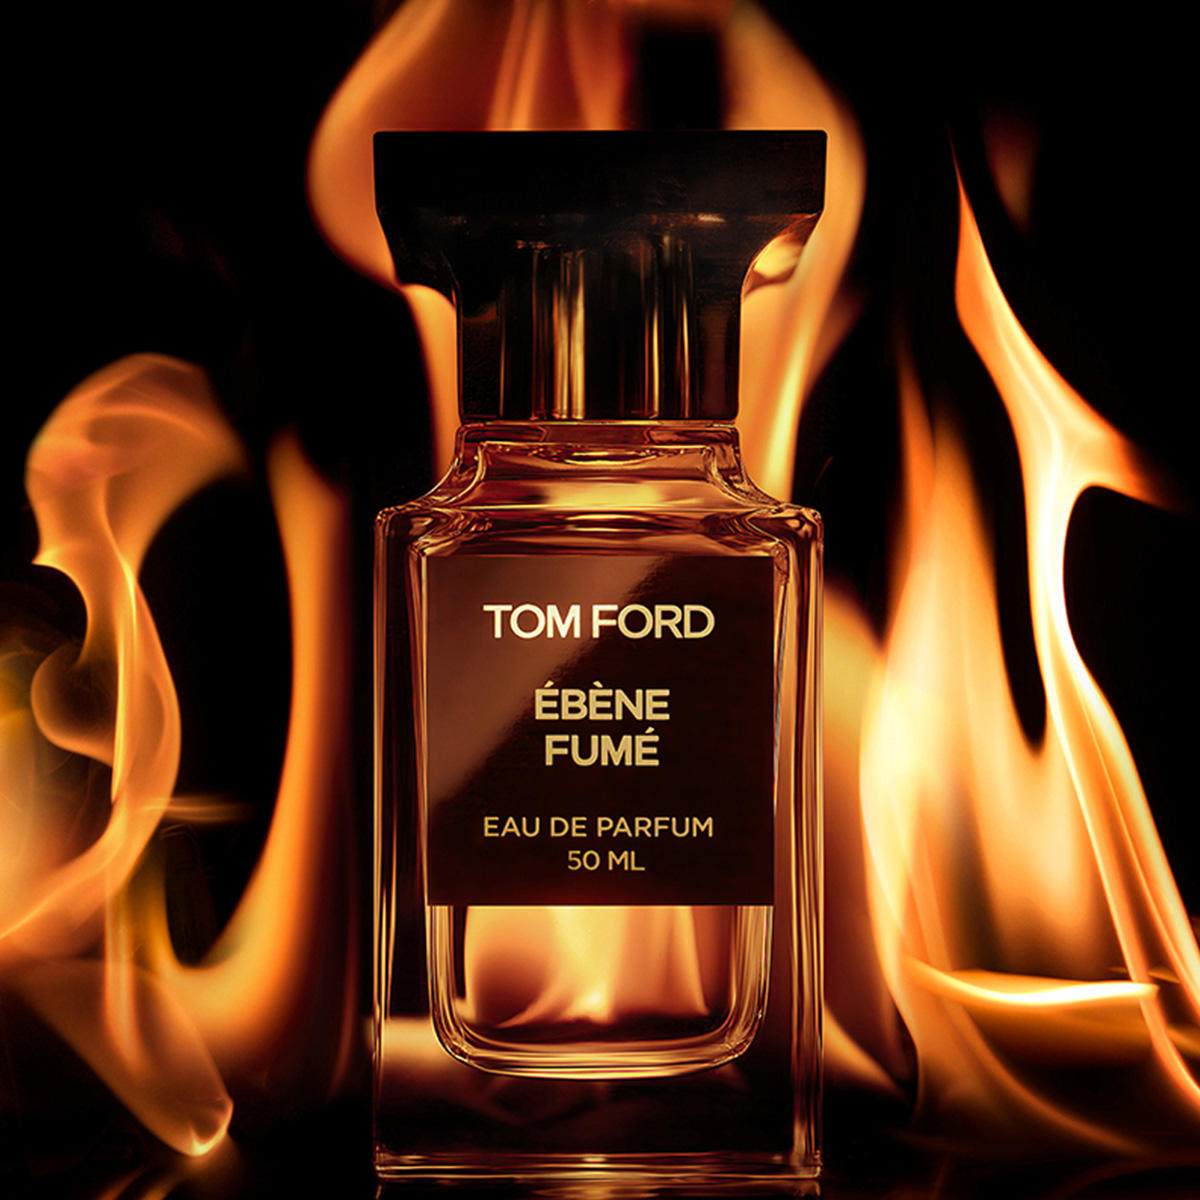 Tom Ford Ébène Fumé Eau de Parfum 30 ml - 2